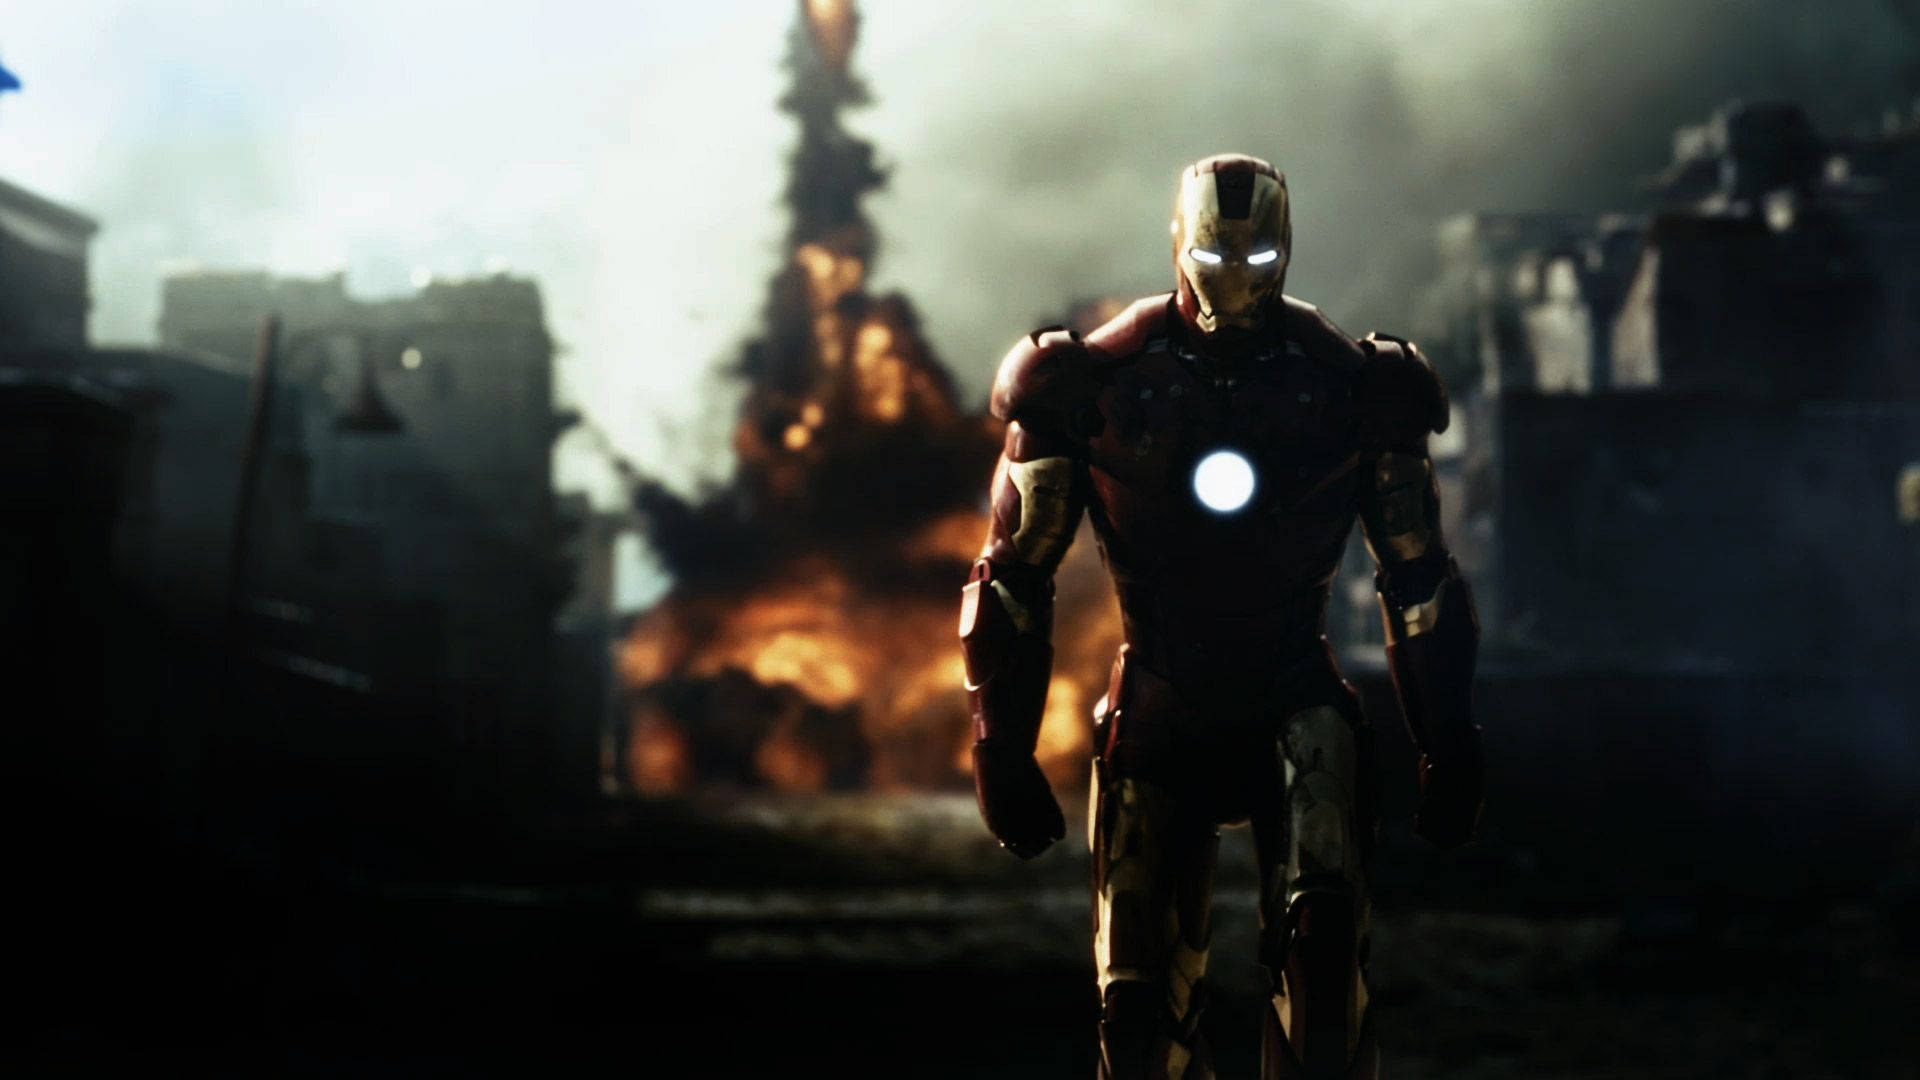 avengers iron man wallpaper hd 1080p